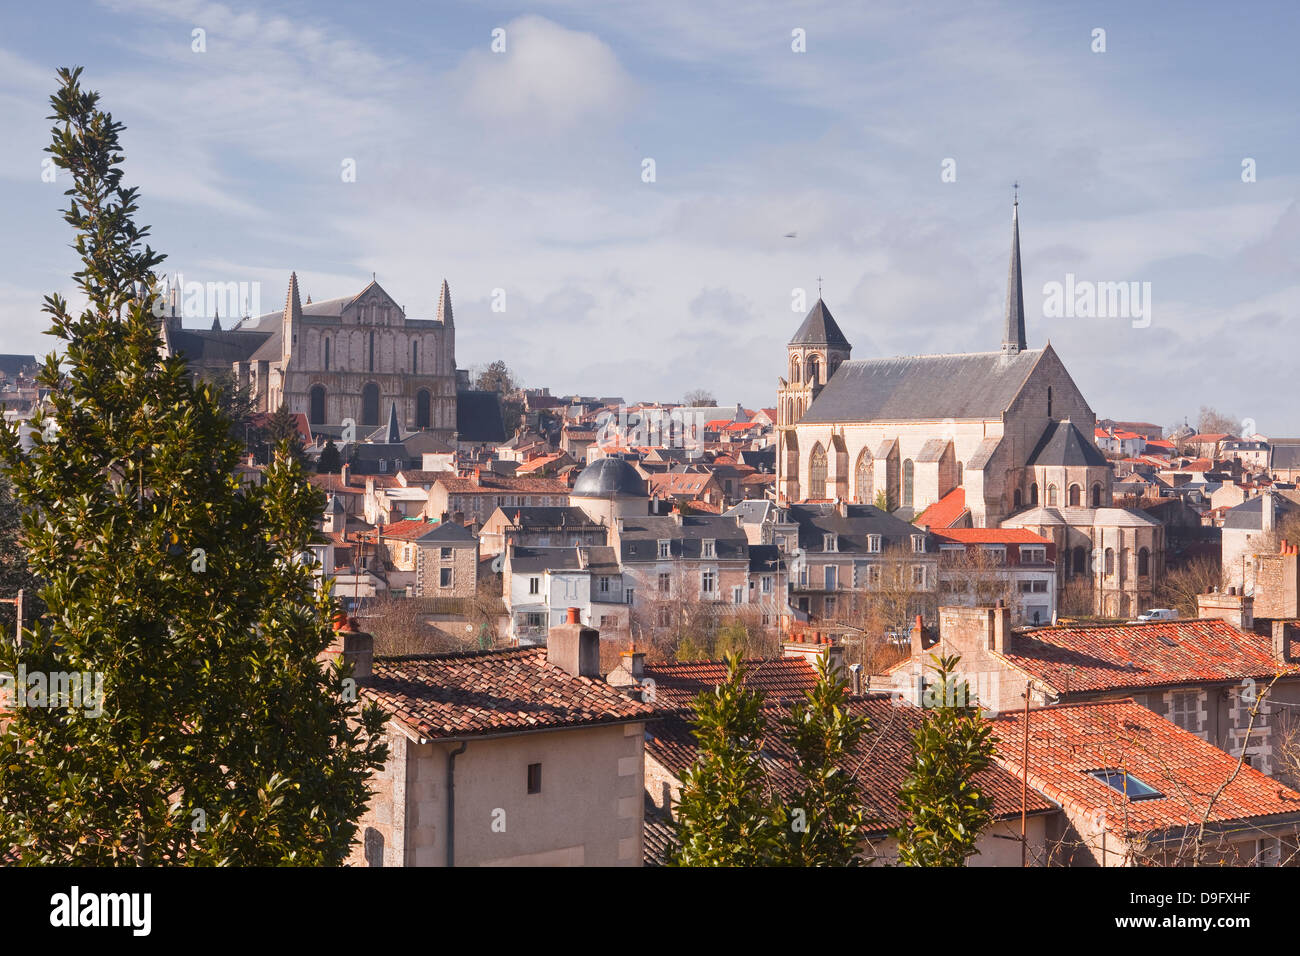 Visualizza i dettagli di city di Poitiers con la cattedrale di Saint Pierre in cima alla collina, Poitiers, Vienne, Poitou-Charentes, Francia Foto Stock